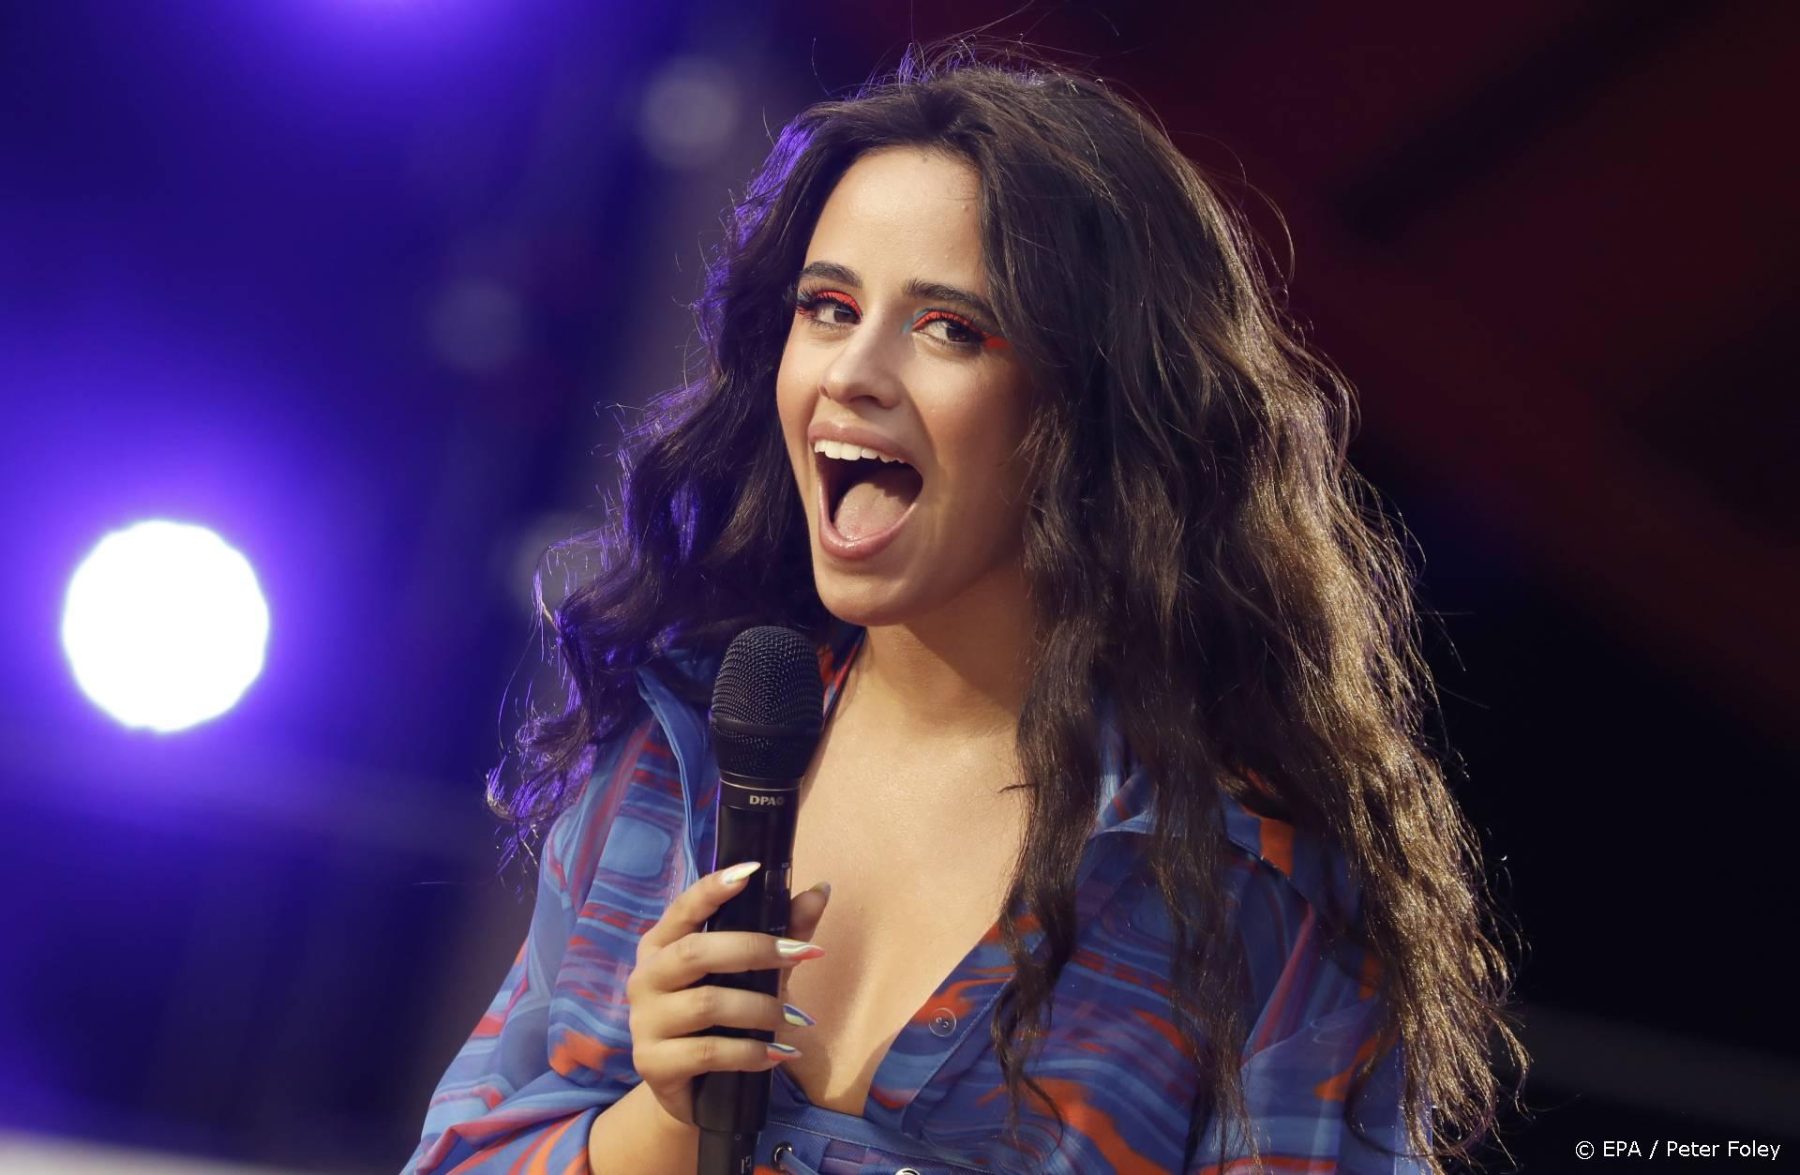 Kan gebeuren: Camila Cabello heeft nip slip op live tv (en danst gewoon verder)